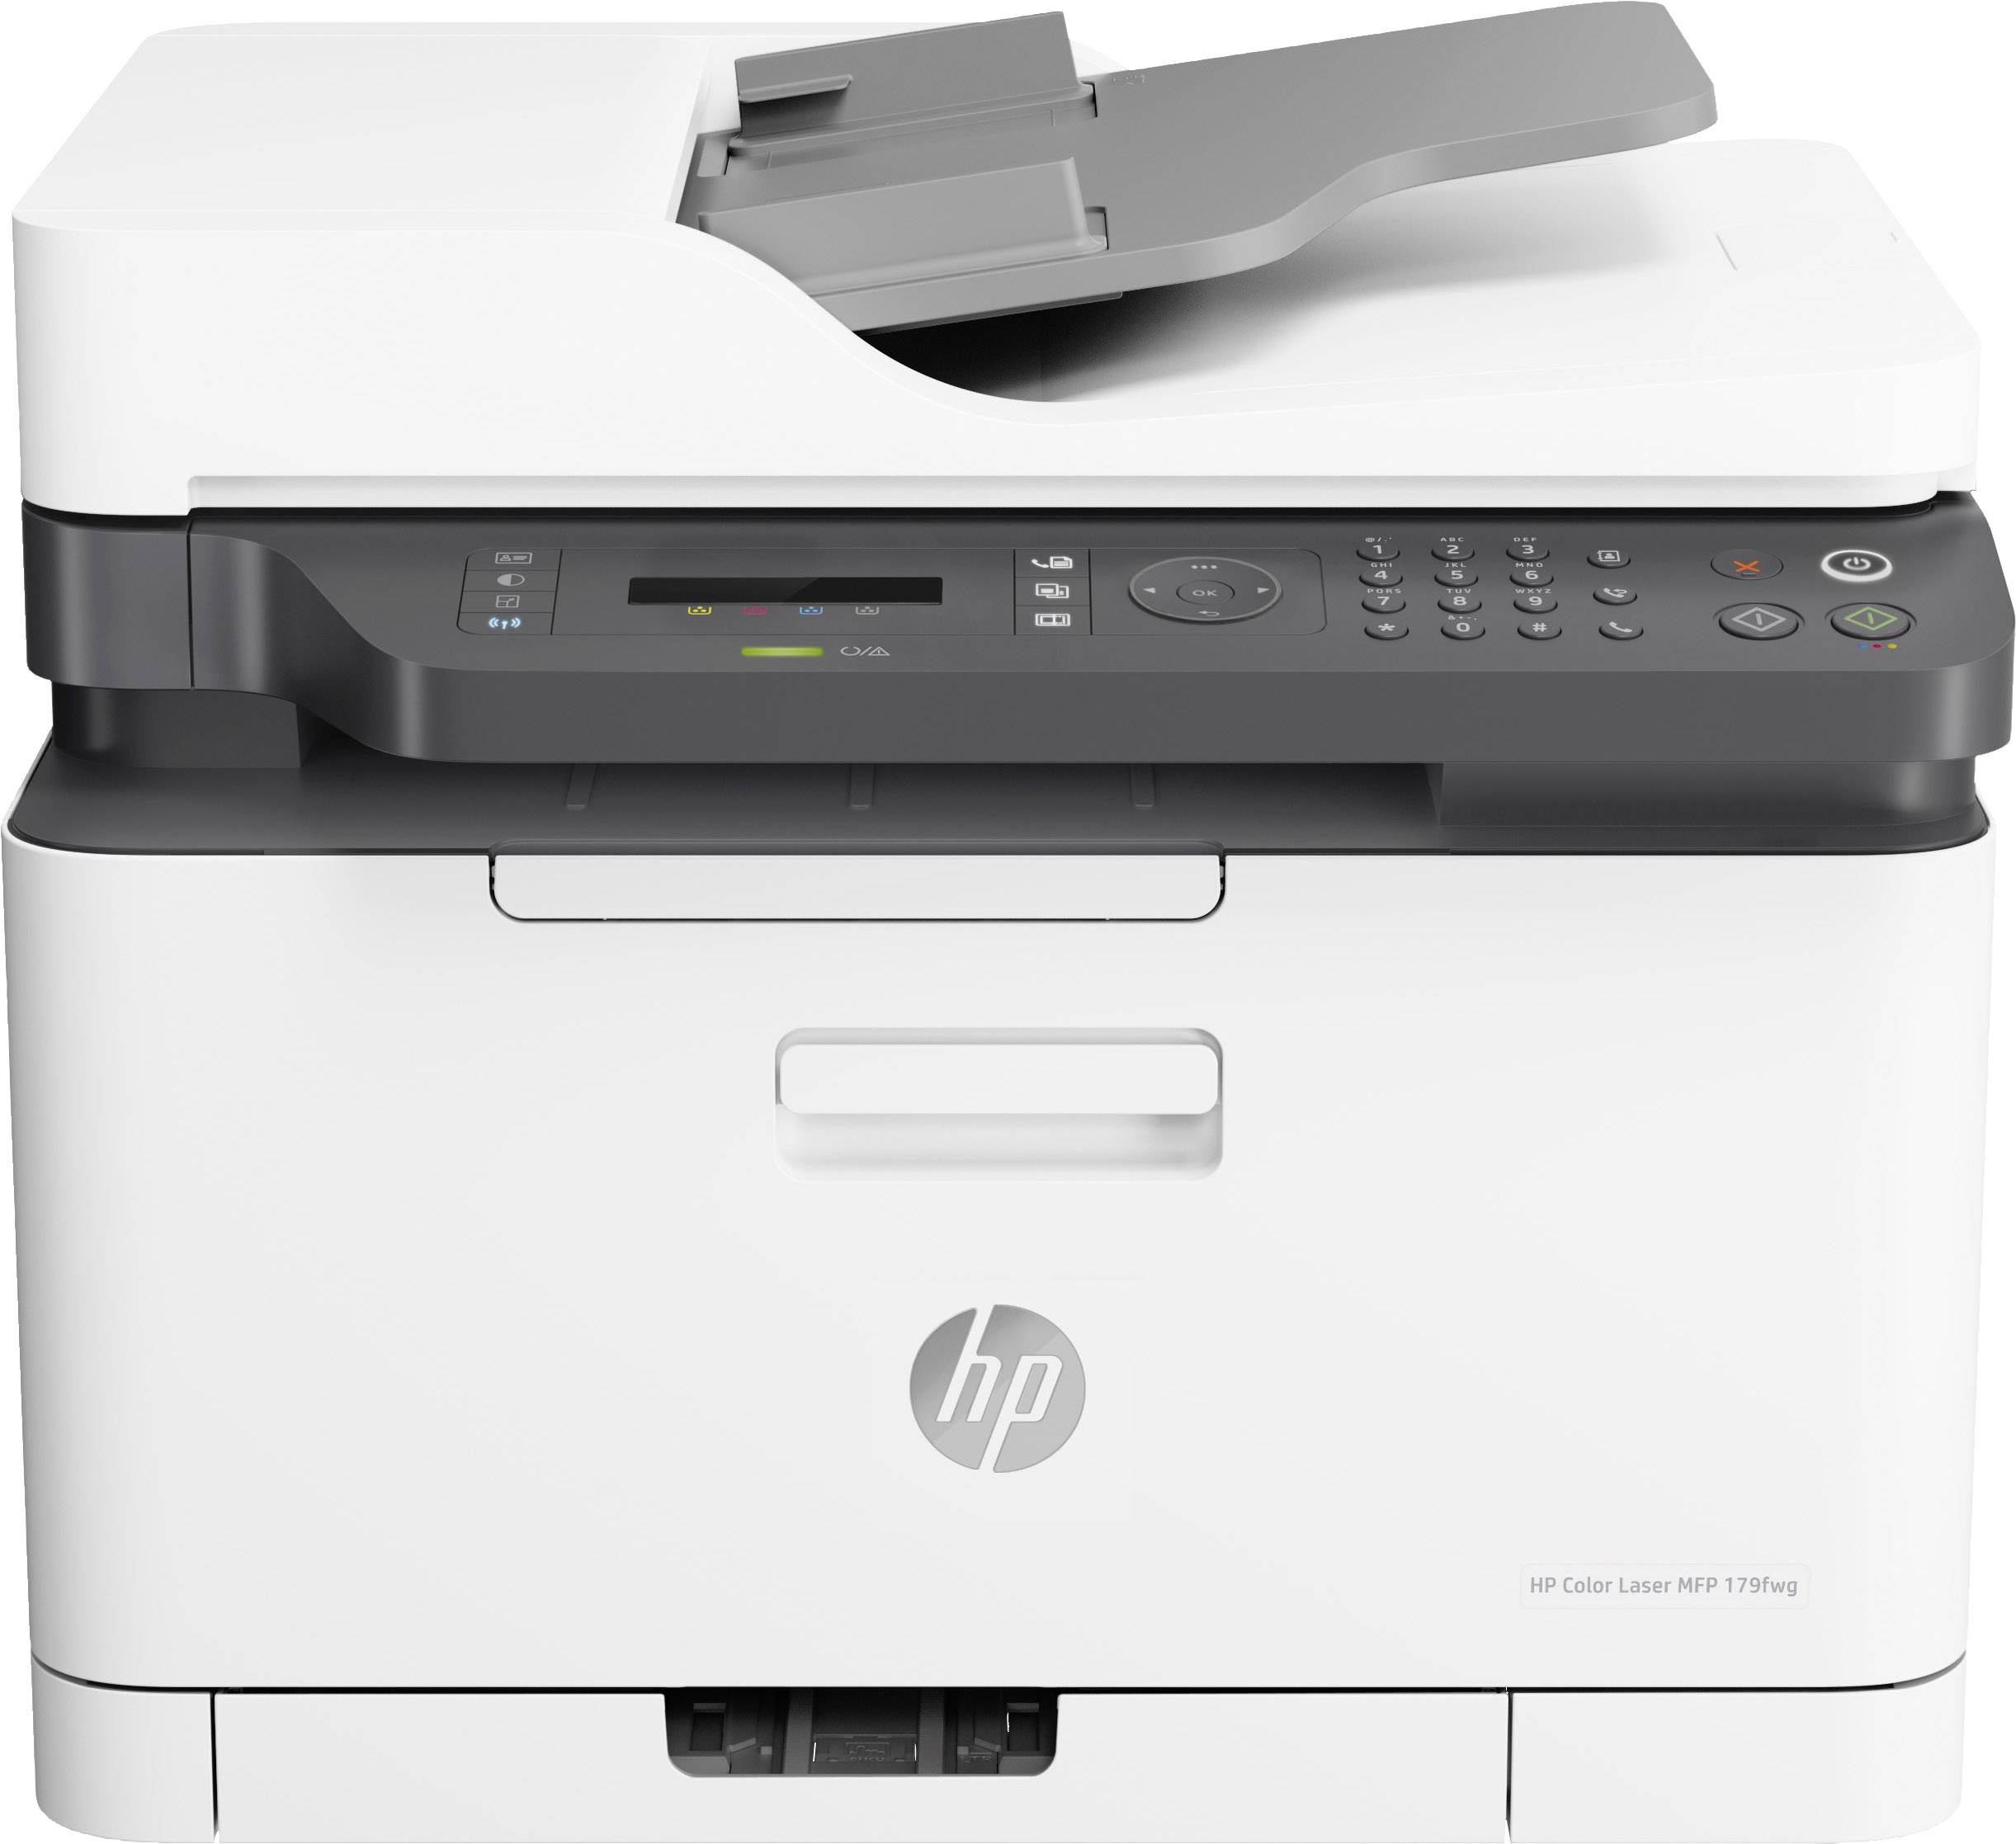 Náplně do tiskárny HP Color Laser MFP 179fwg